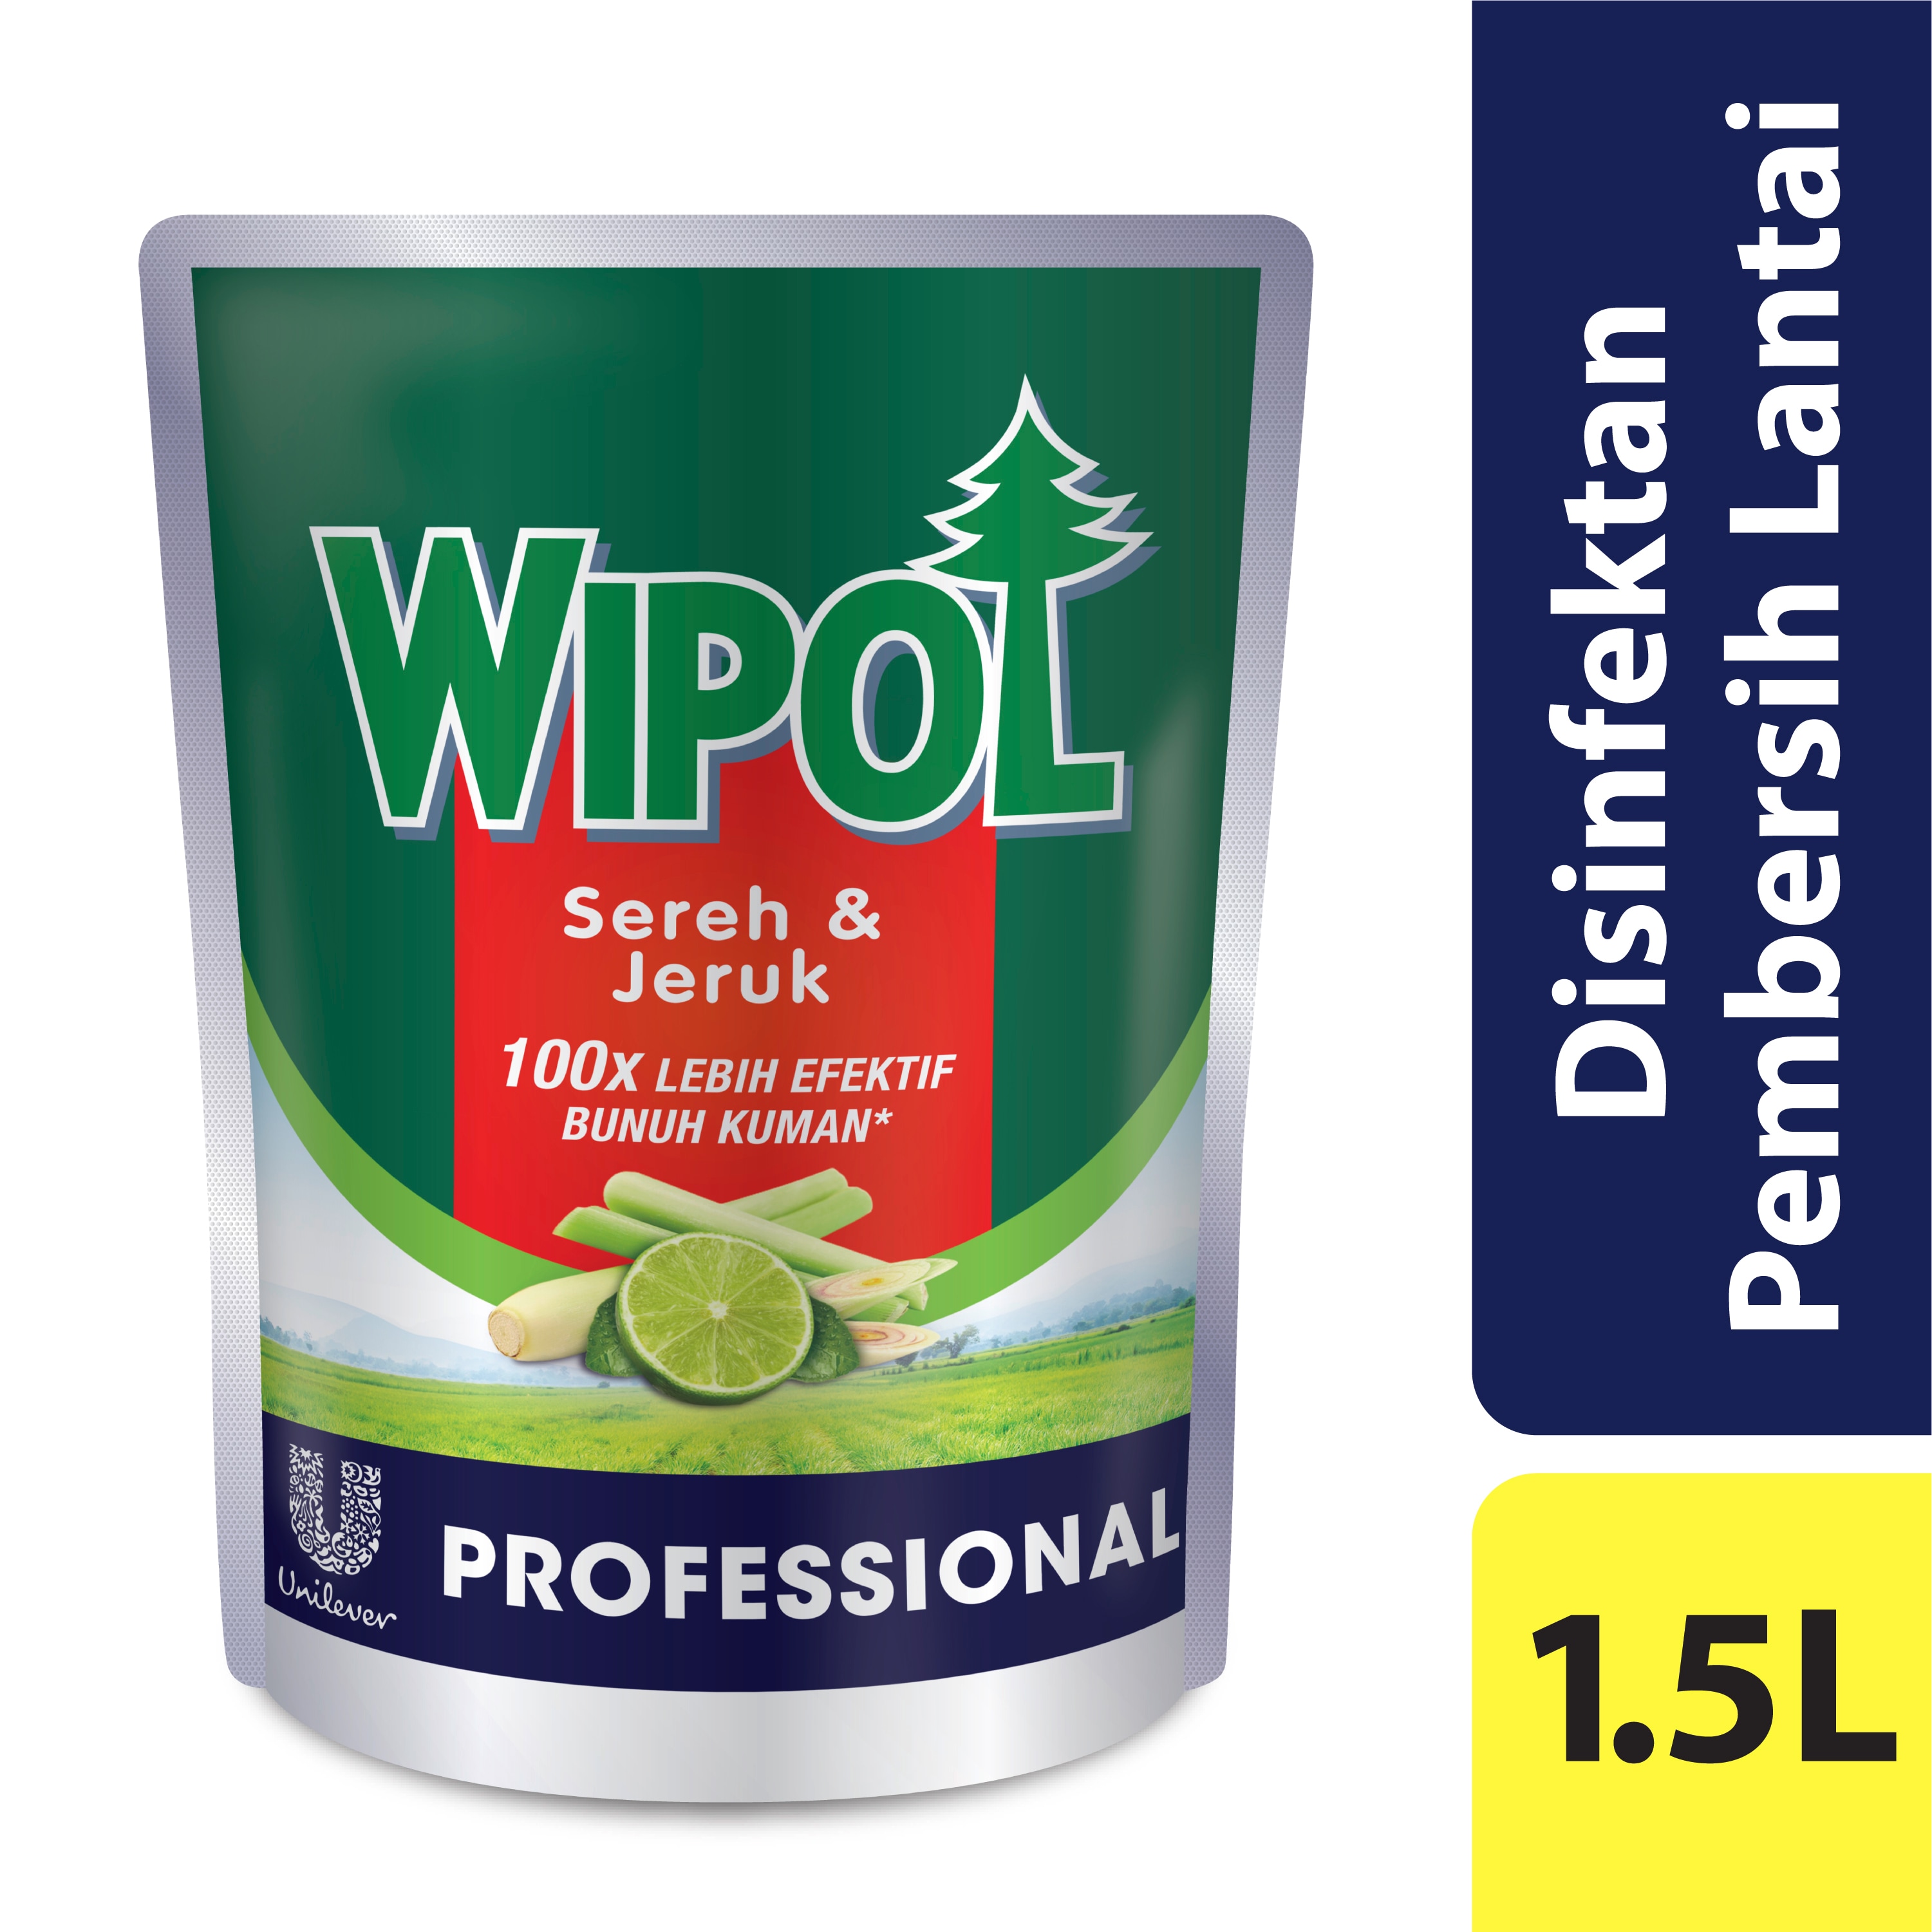 Wipol Professional Classic Pine 1.5L - Menghilangkan Kotoran, Bau Tak Sedap dan Membunuh Bakteri di Lantai.